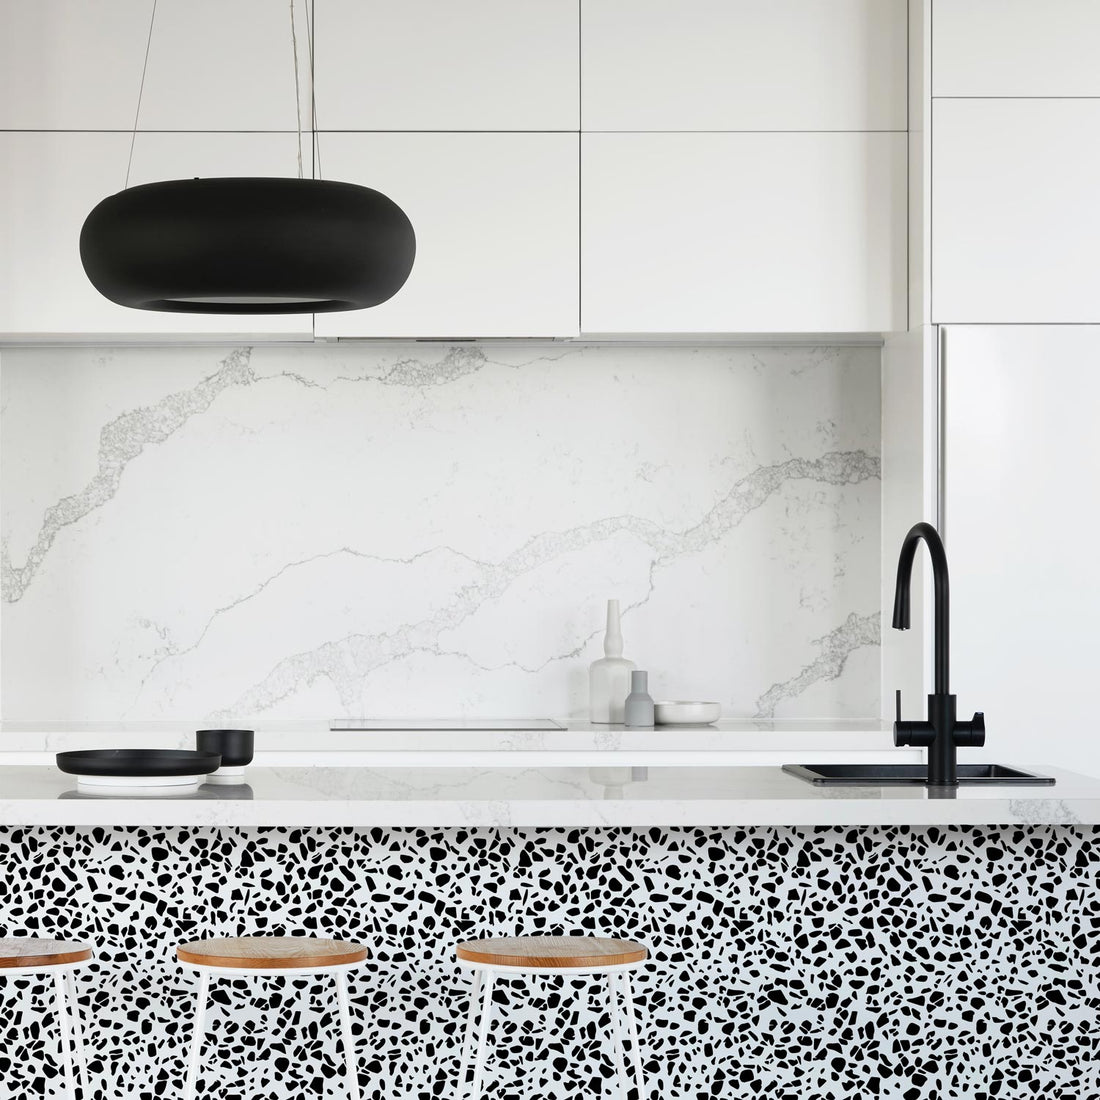 modern kitchen interior with black terrazzo wallpaper kitchen island